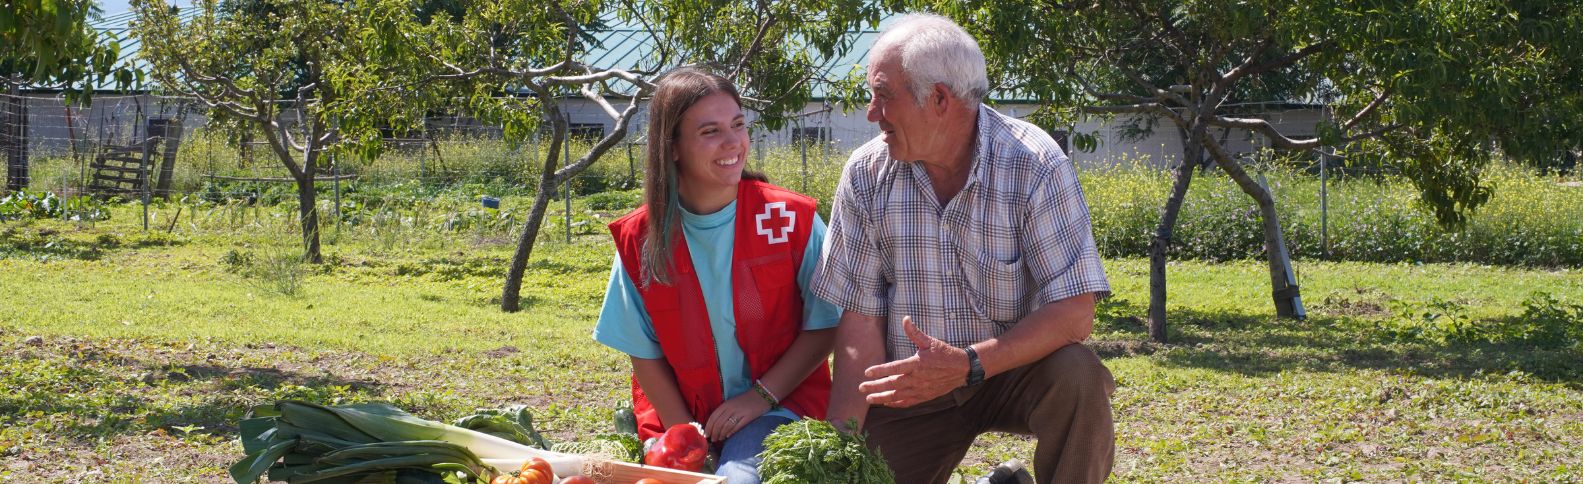 Cruz Roja apuesta por el voluntariado joven para atender la despoblación